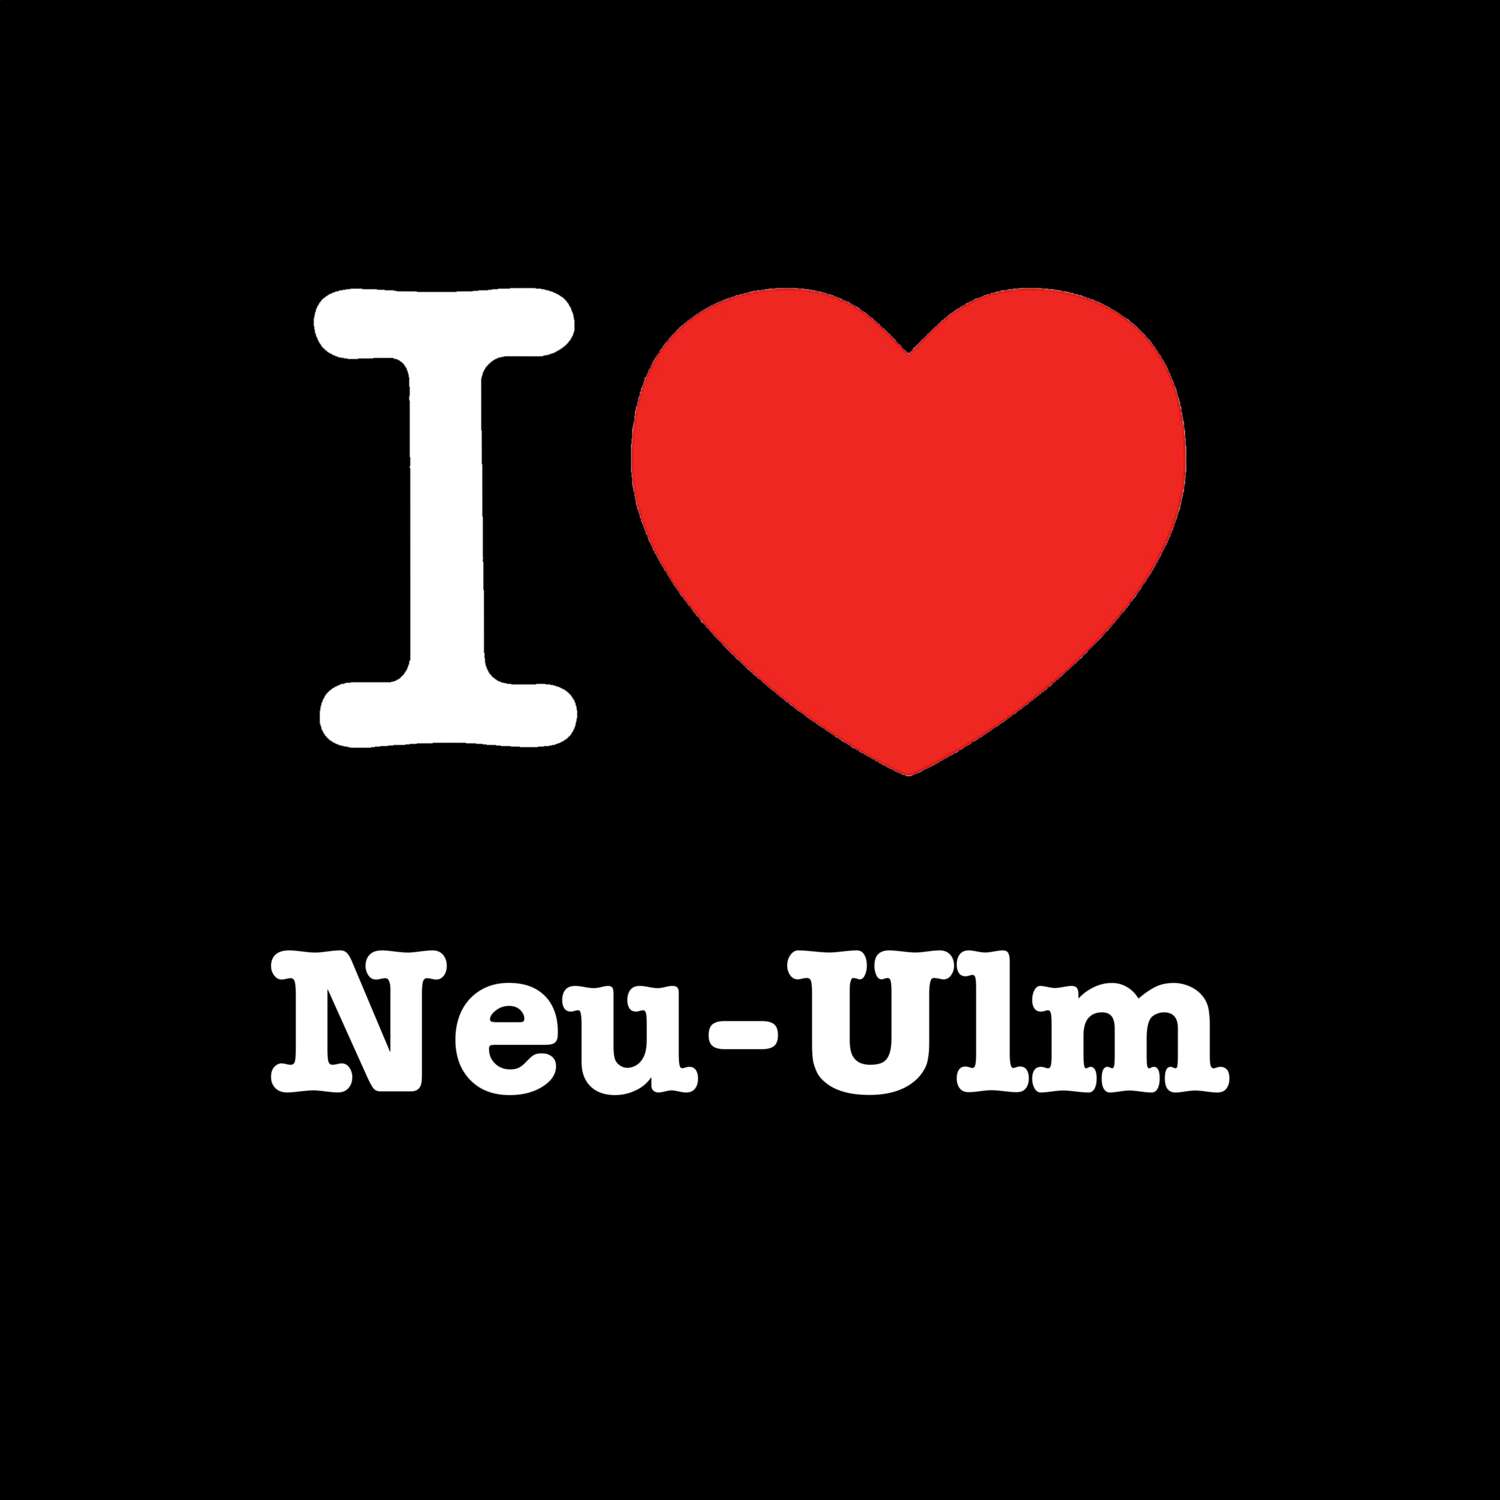 Neu-Ulm T-Shirt »I love«